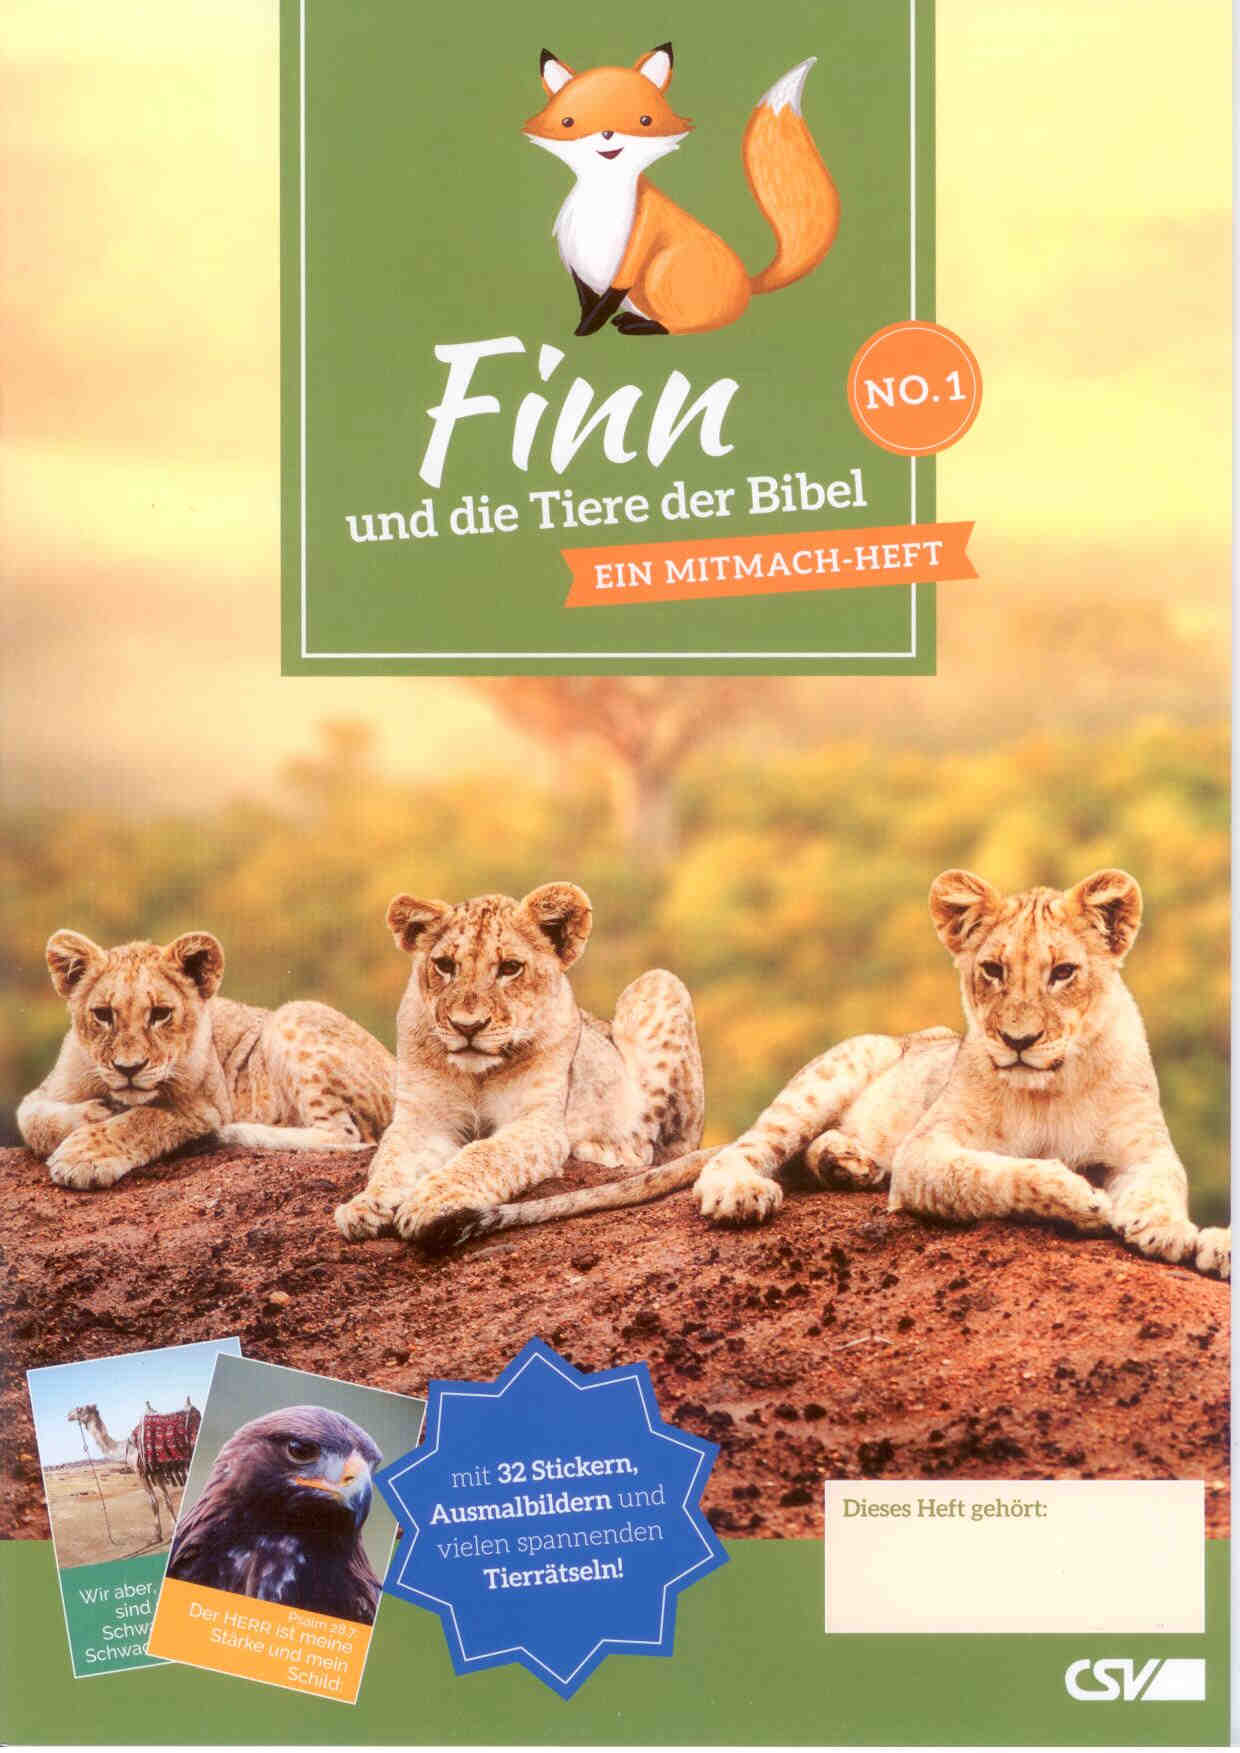 Finn und die Tiere der Bibel No. 1